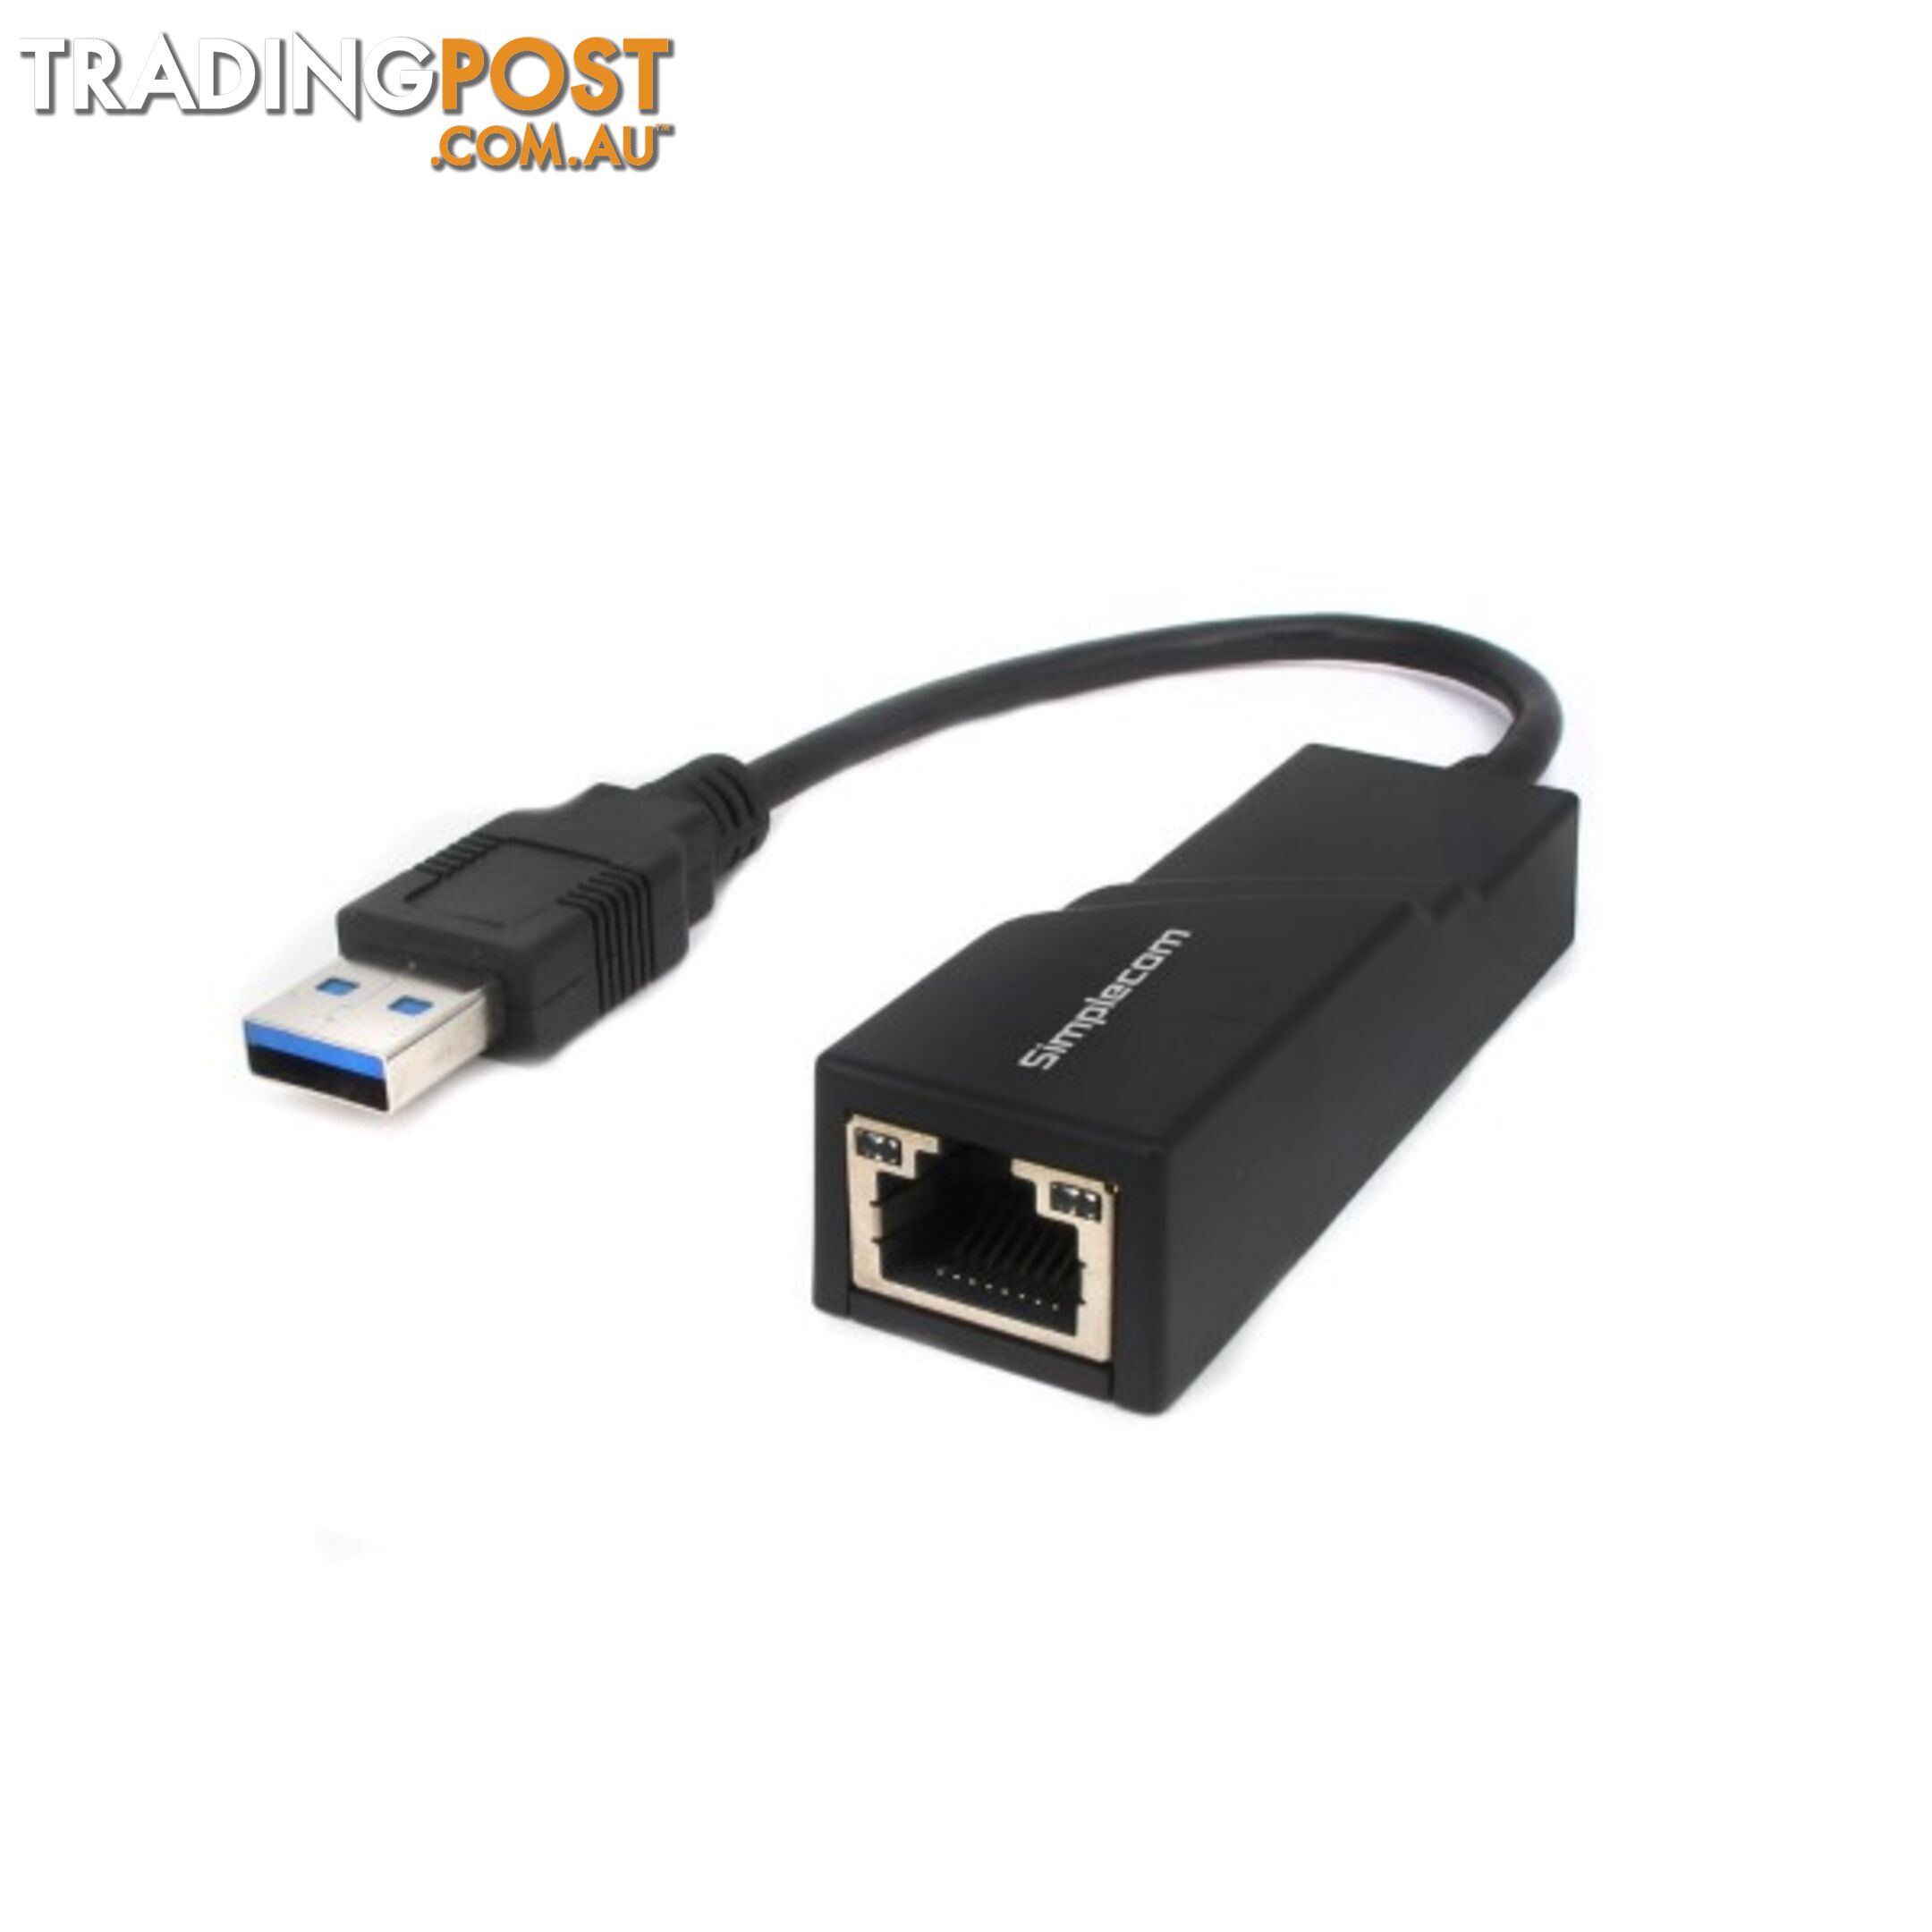 Simplecom NU301 SuperSpeed USB 3.0 to RJ45 Gigabit 1000Mbps Ethernet Network Adapter